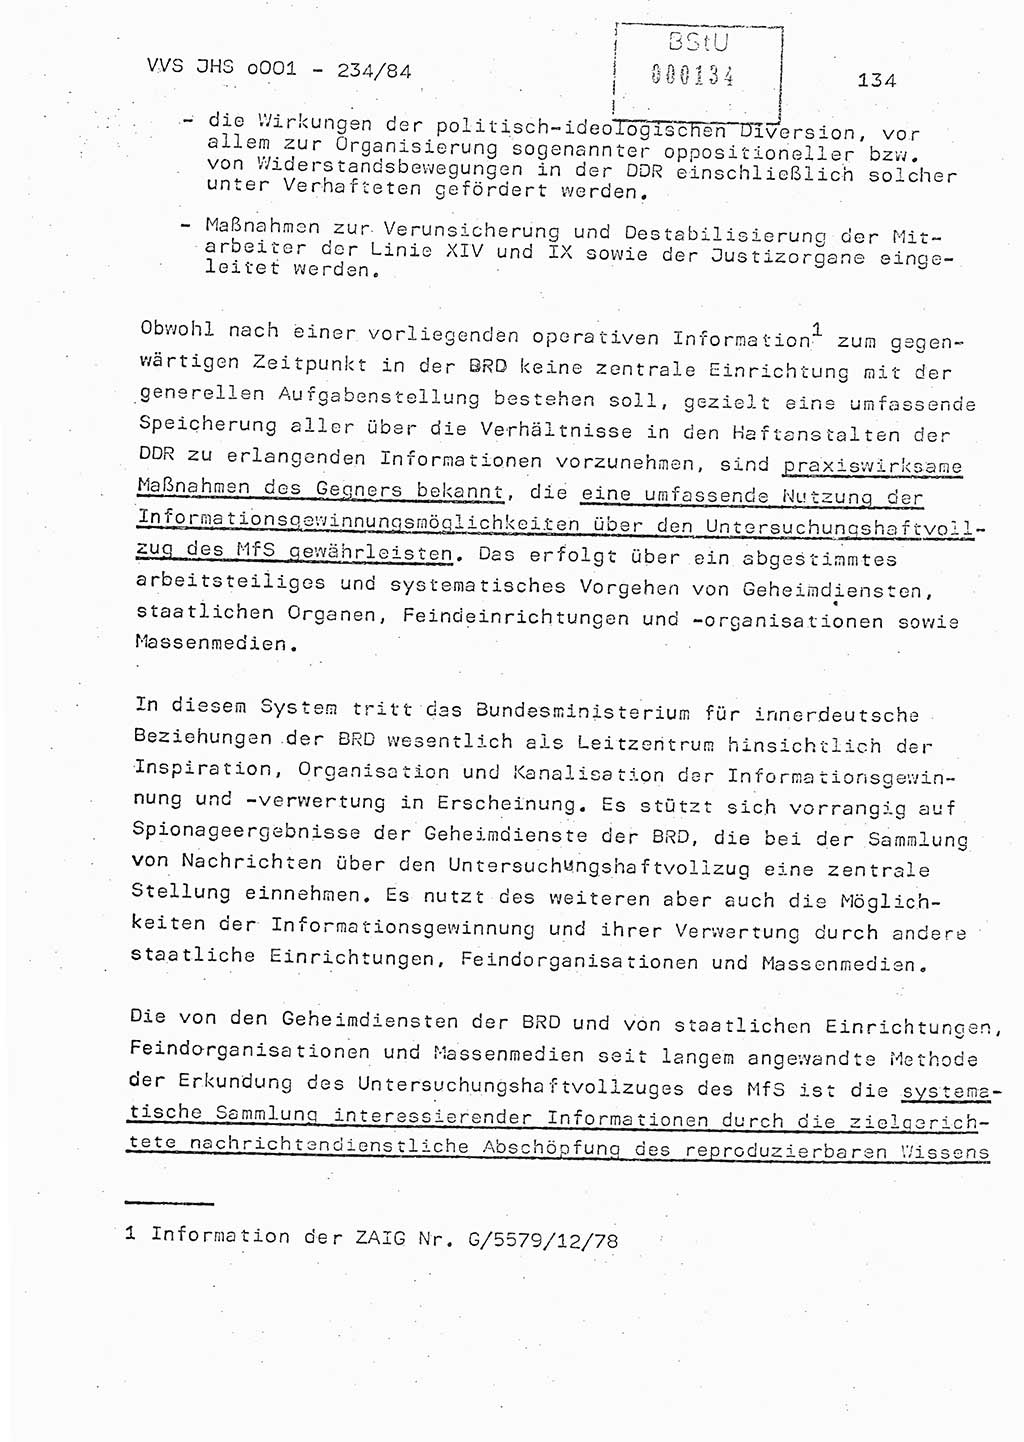 Dissertation Oberst Siegfried Rataizick (Abt. ⅩⅣ), Oberstleutnant Volkmar Heinz (Abt. ⅩⅣ), Oberstleutnant Werner Stein (HA Ⅸ), Hauptmann Heinz Conrad (JHS), Ministerium für Staatssicherheit (MfS) [Deutsche Demokratische Republik (DDR)], Juristische Hochschule (JHS), Vertrauliche Verschlußsache (VVS) o001-234/84, Potsdam 1984, Seite 134 (Diss. MfS DDR JHS VVS o001-234/84 1984, S. 134)